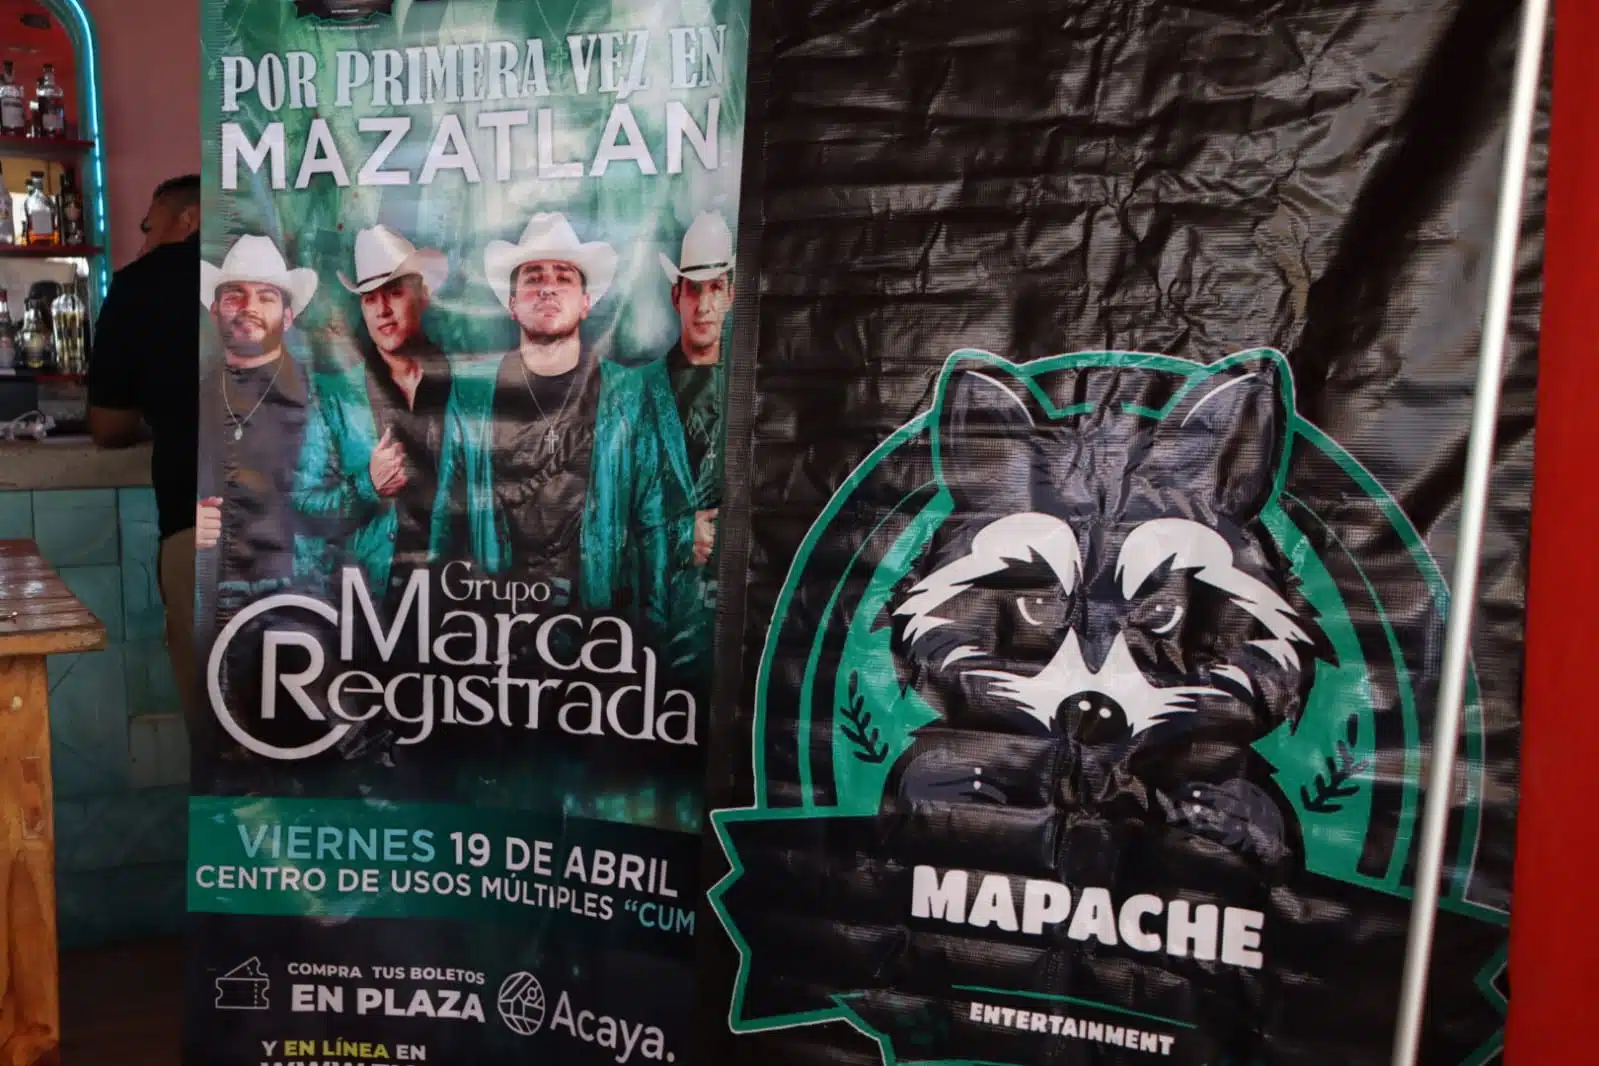 Cartelera que promociona que estará el Grupo Marca Registrada en Mazatlán